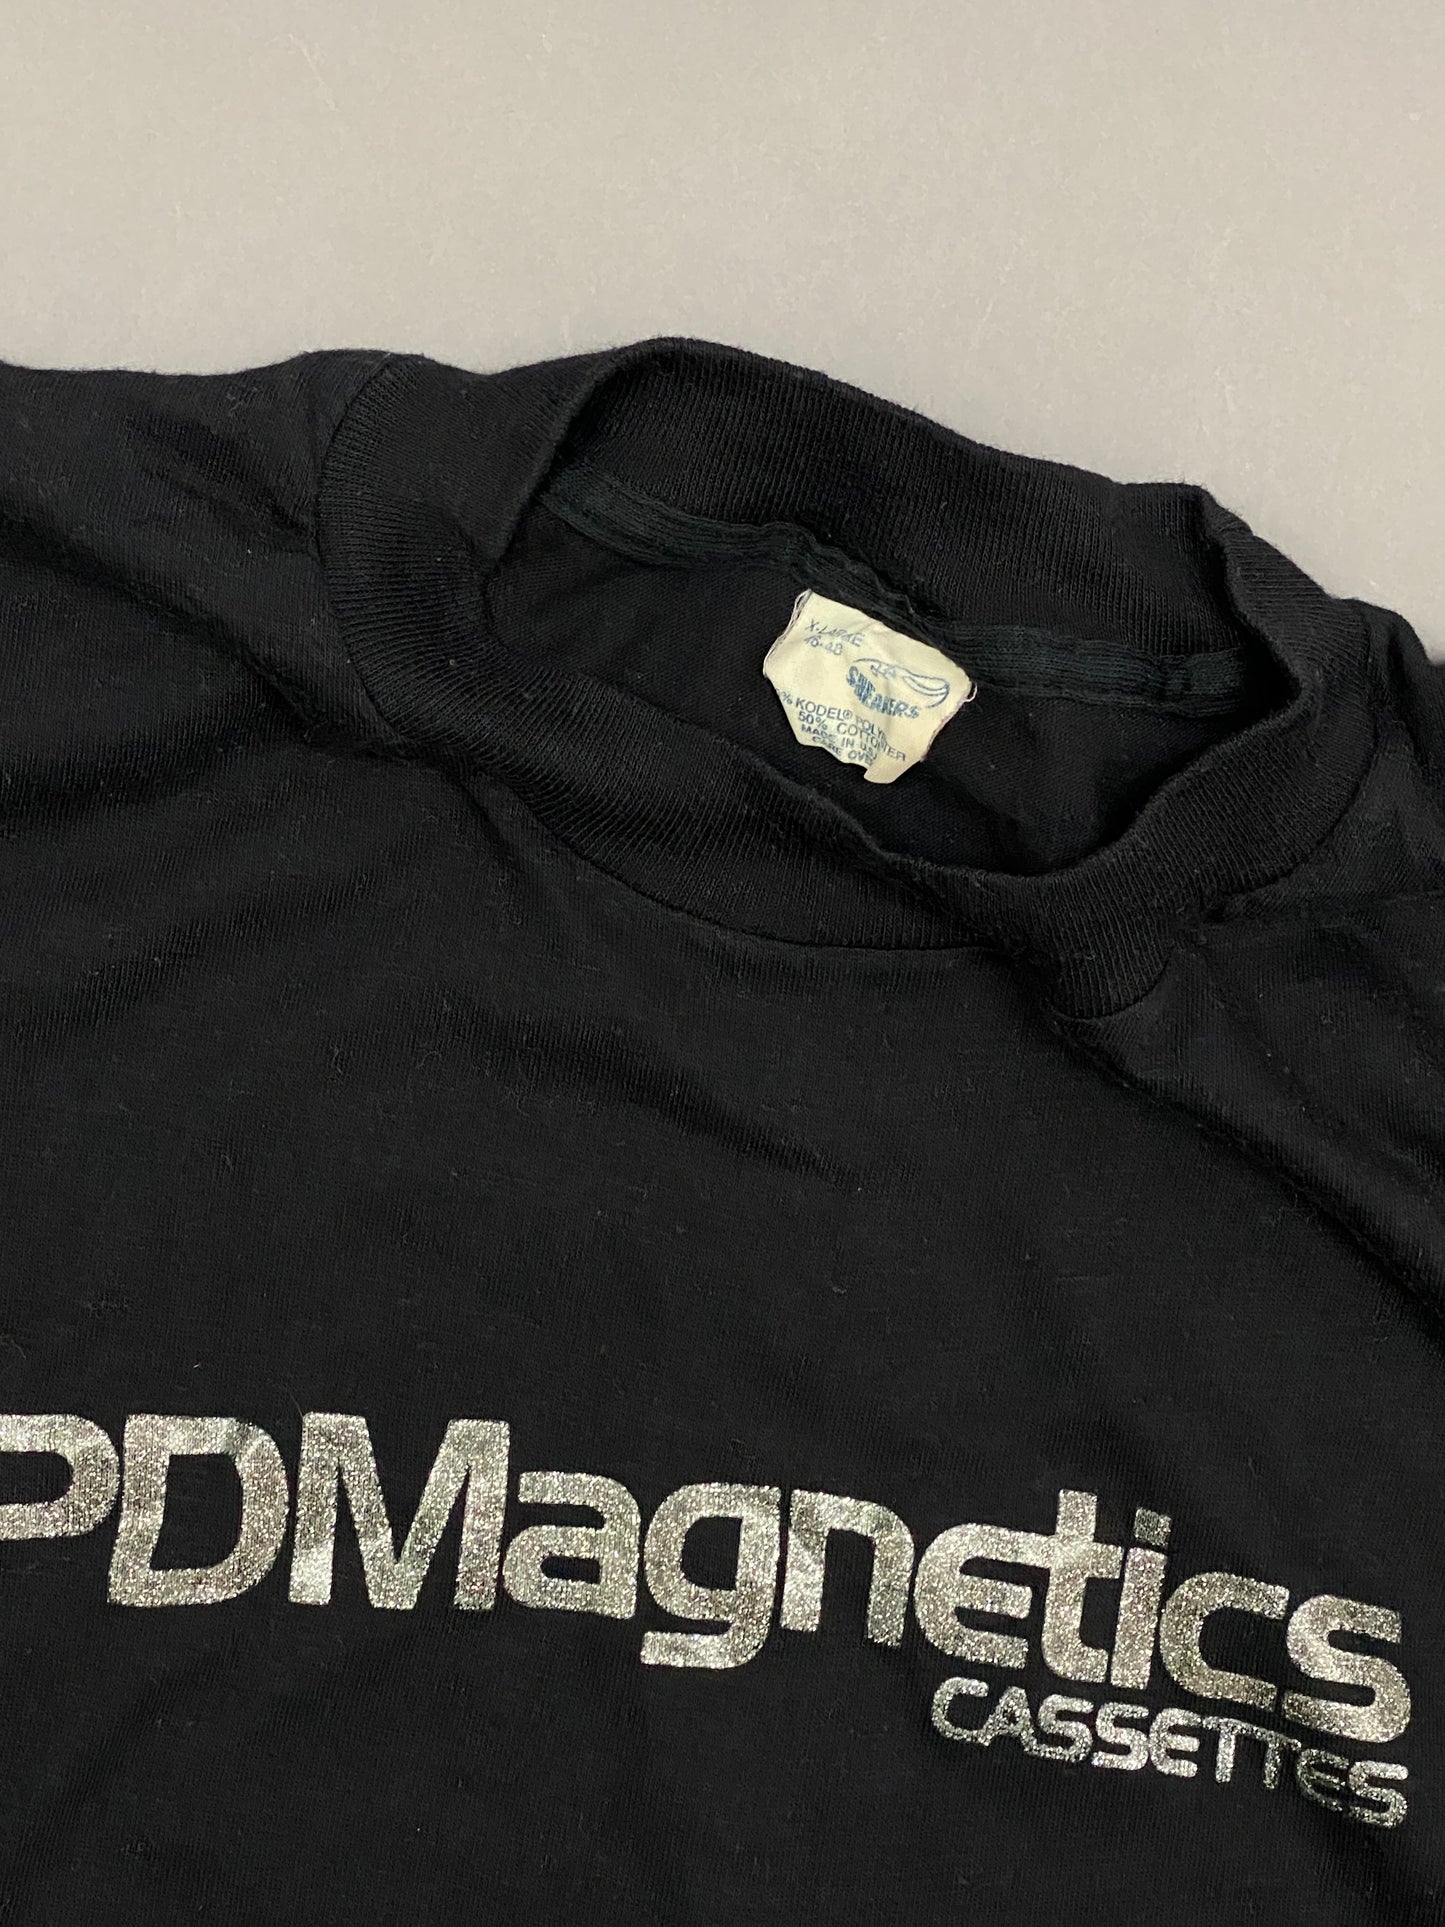 PDMagnetics Cassettes 80's T-shirt